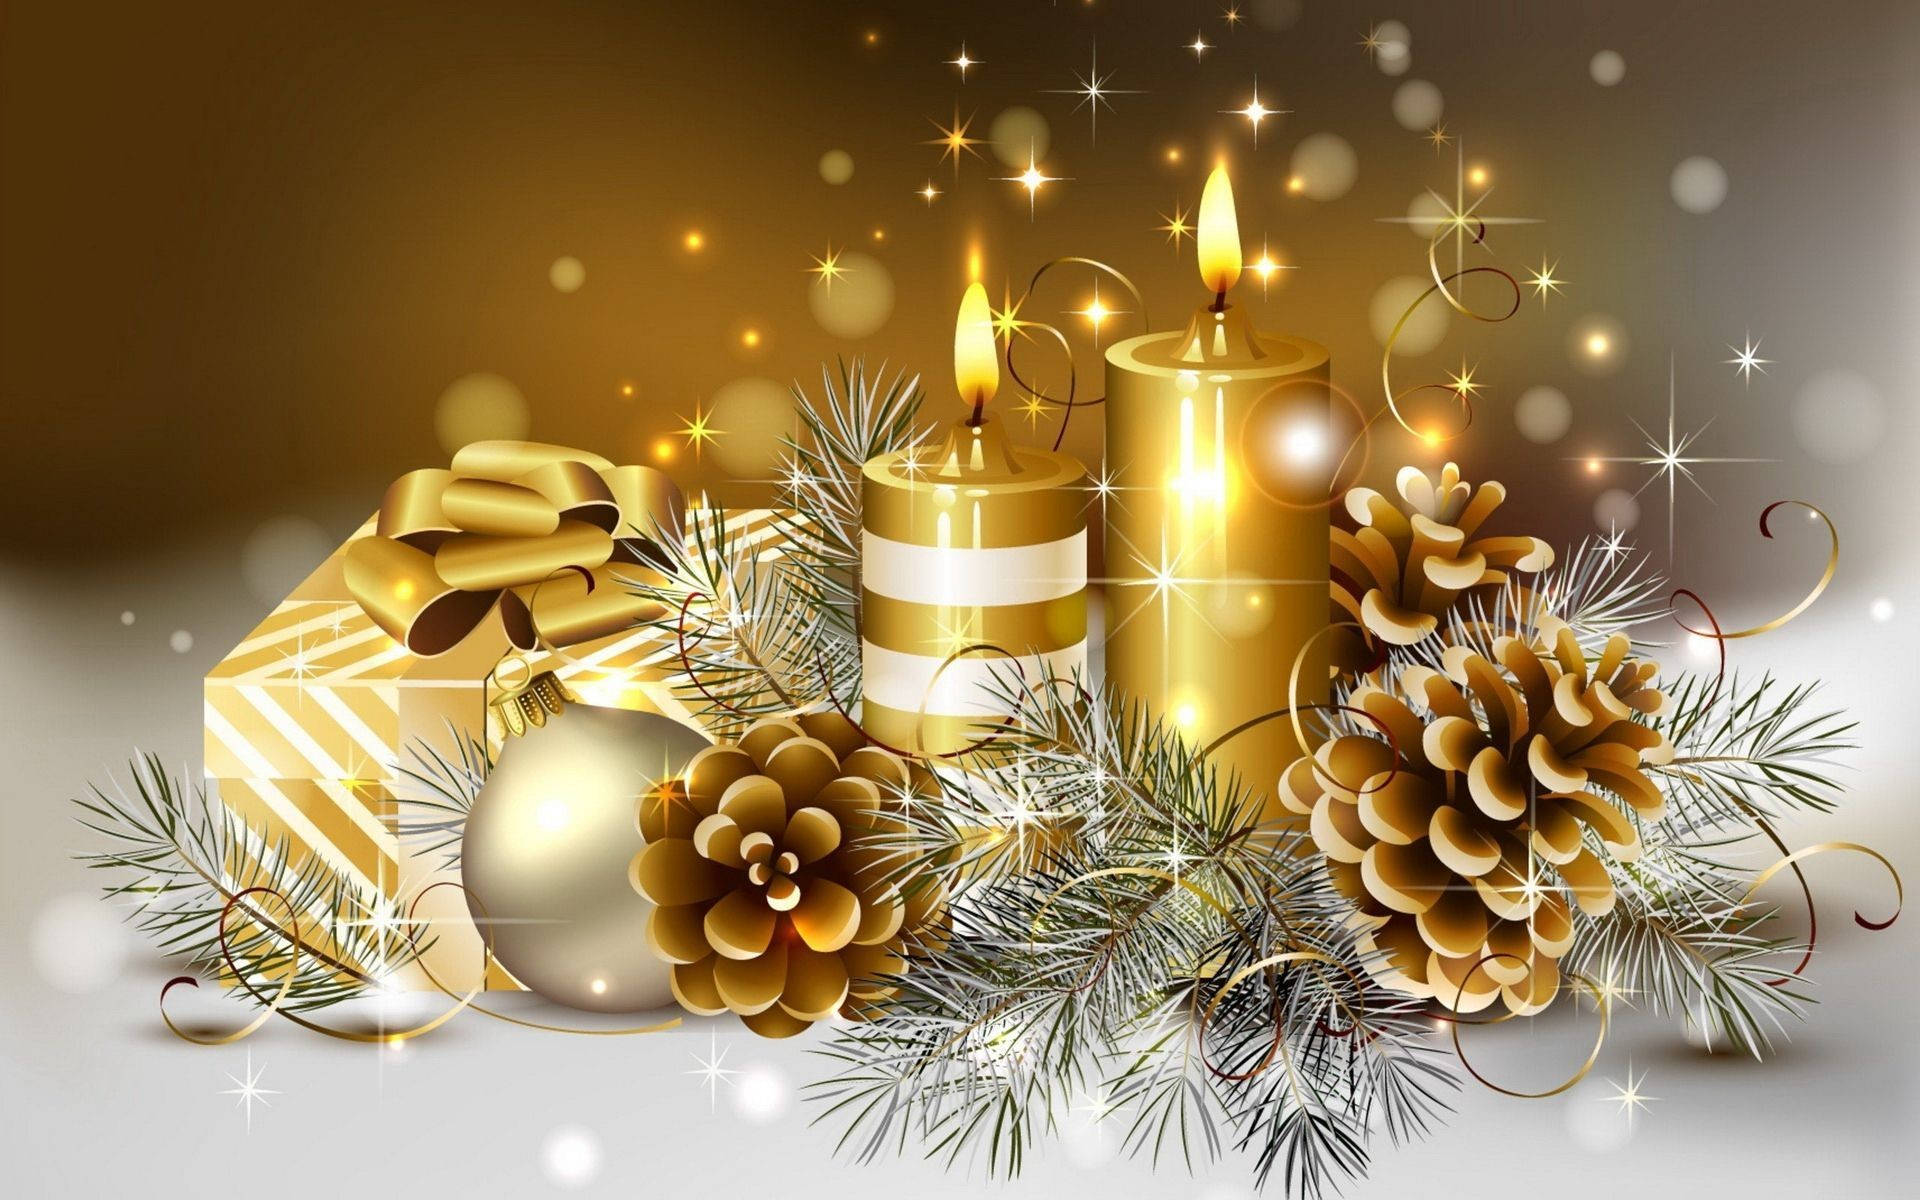 Merry Christmas Hd Golden Candles Wallpaper